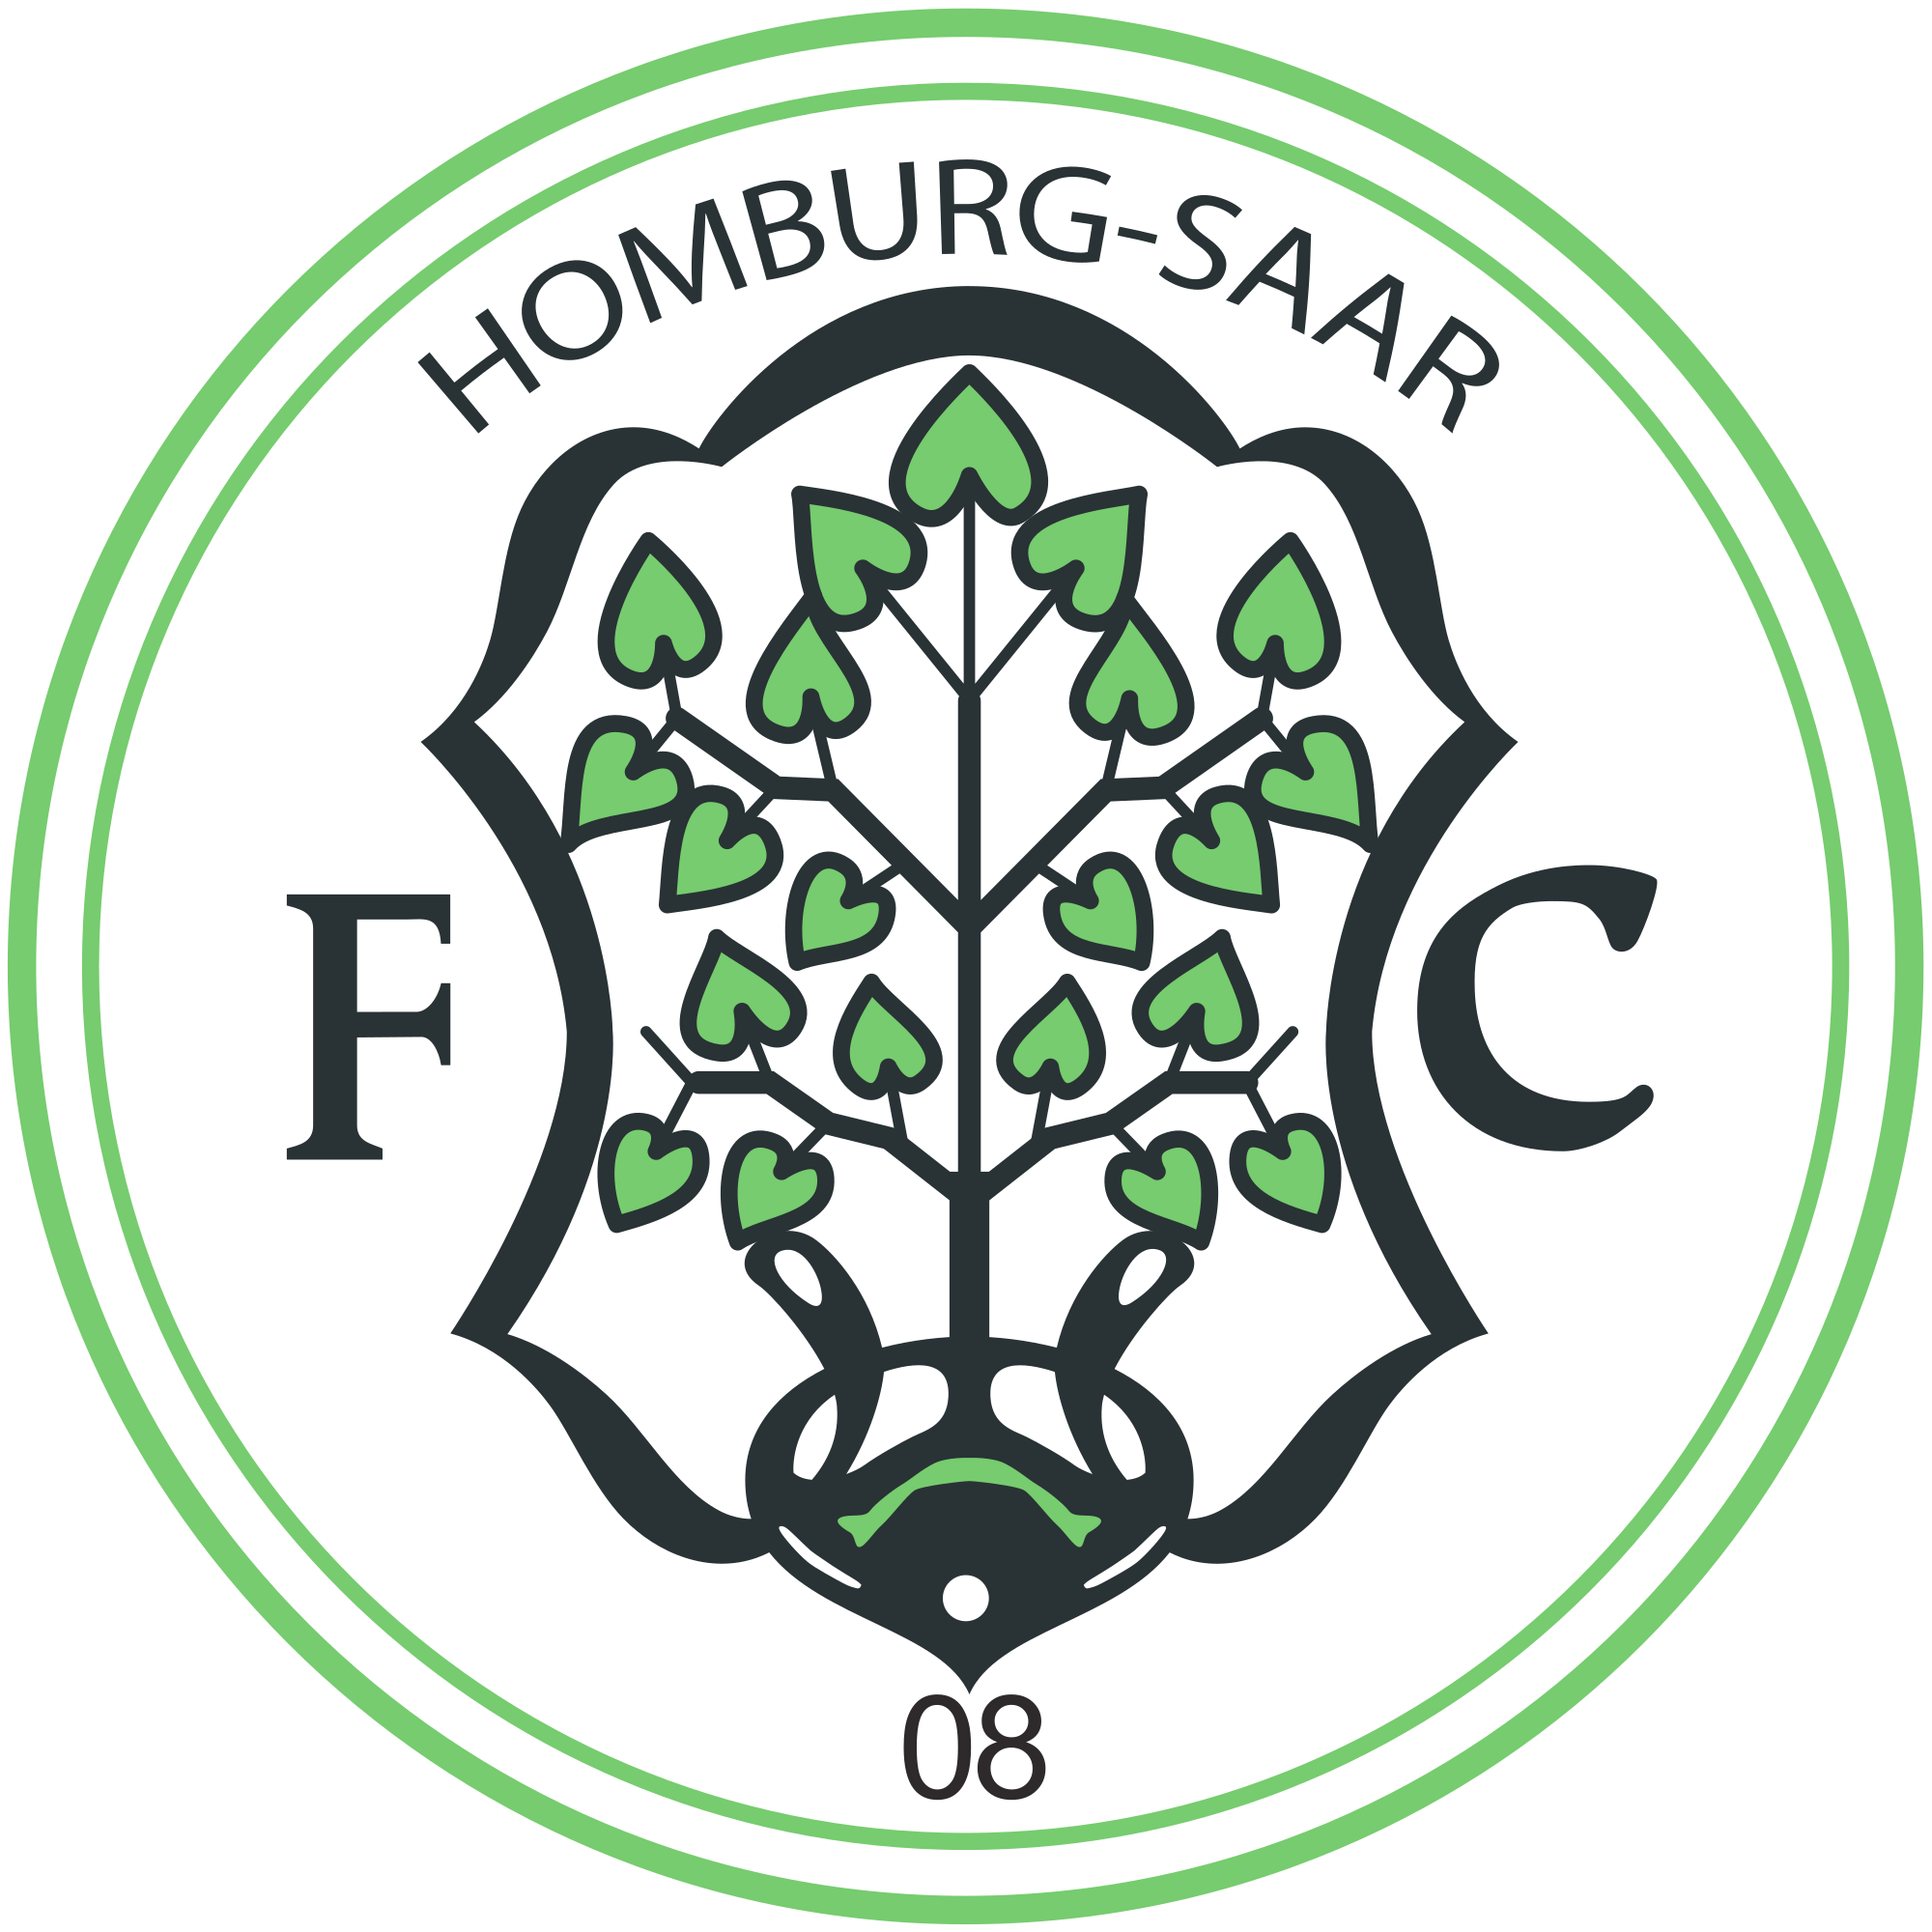 洪堡足球俱樂部